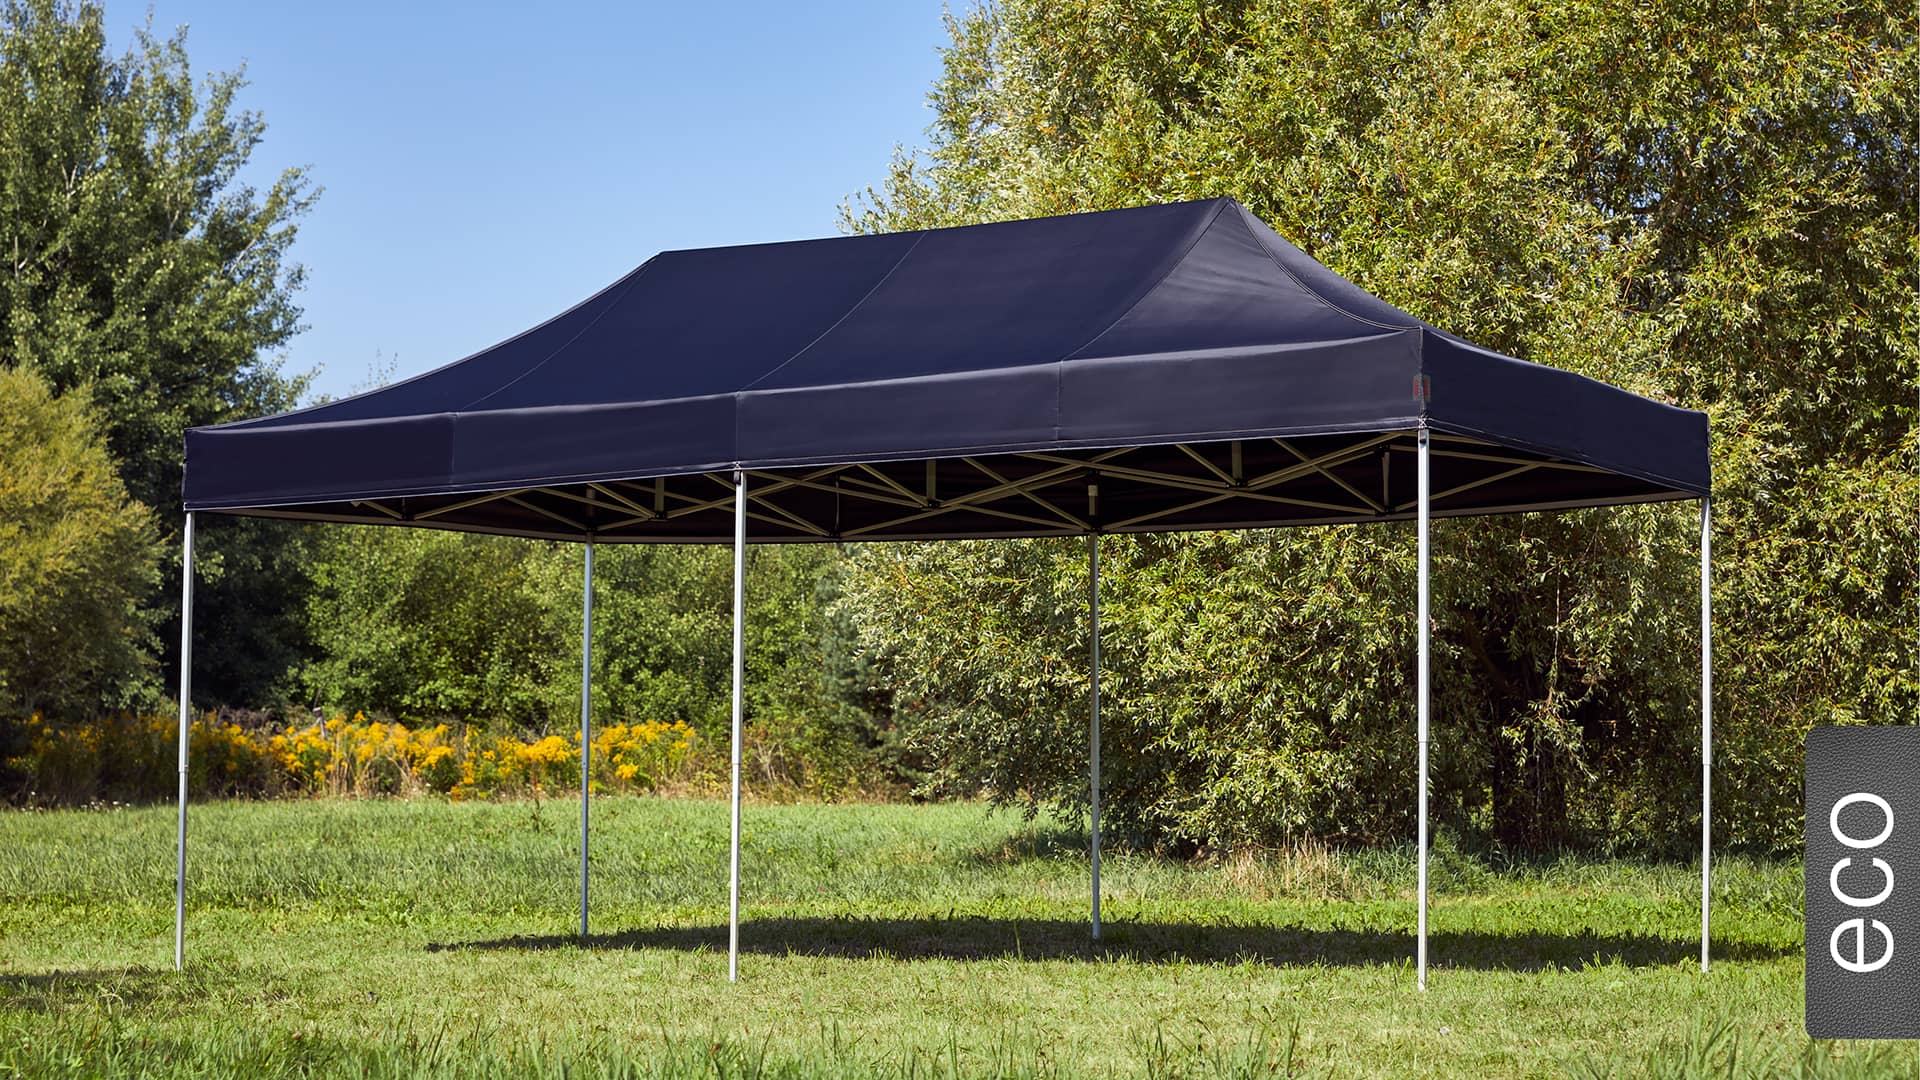 Der 6x3 Faltpavillon der Produktlinie eco mit einem schwarzen Dach aufgestellt im Garten.